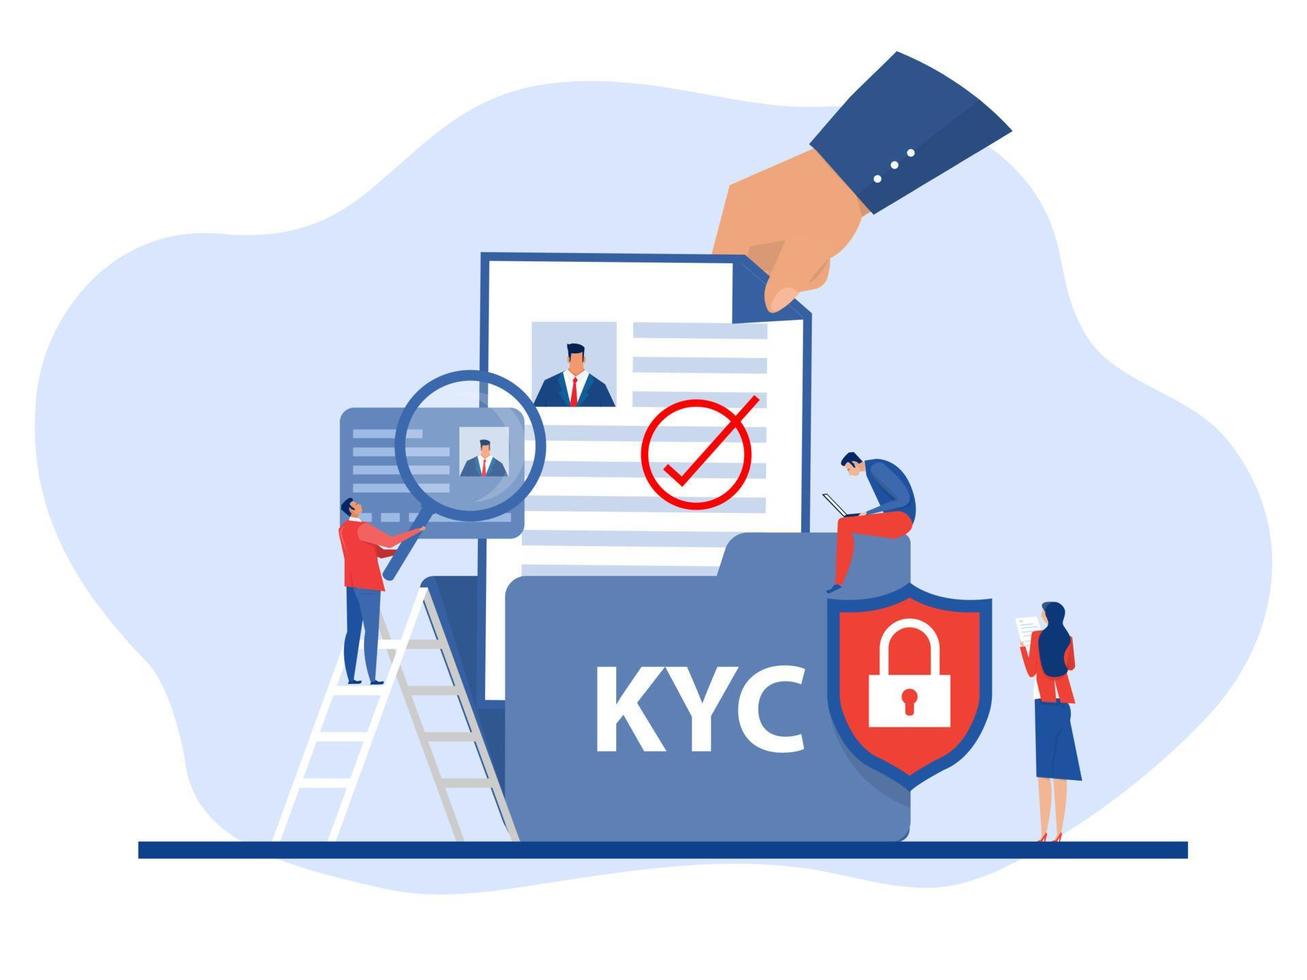 kyc ou conheça seu cliente com negócios verificando a identidade do conceito de seus clientes nos futuros parceiros através de uma lupa ideia de identificação do negócio e segurança financeira. vetor